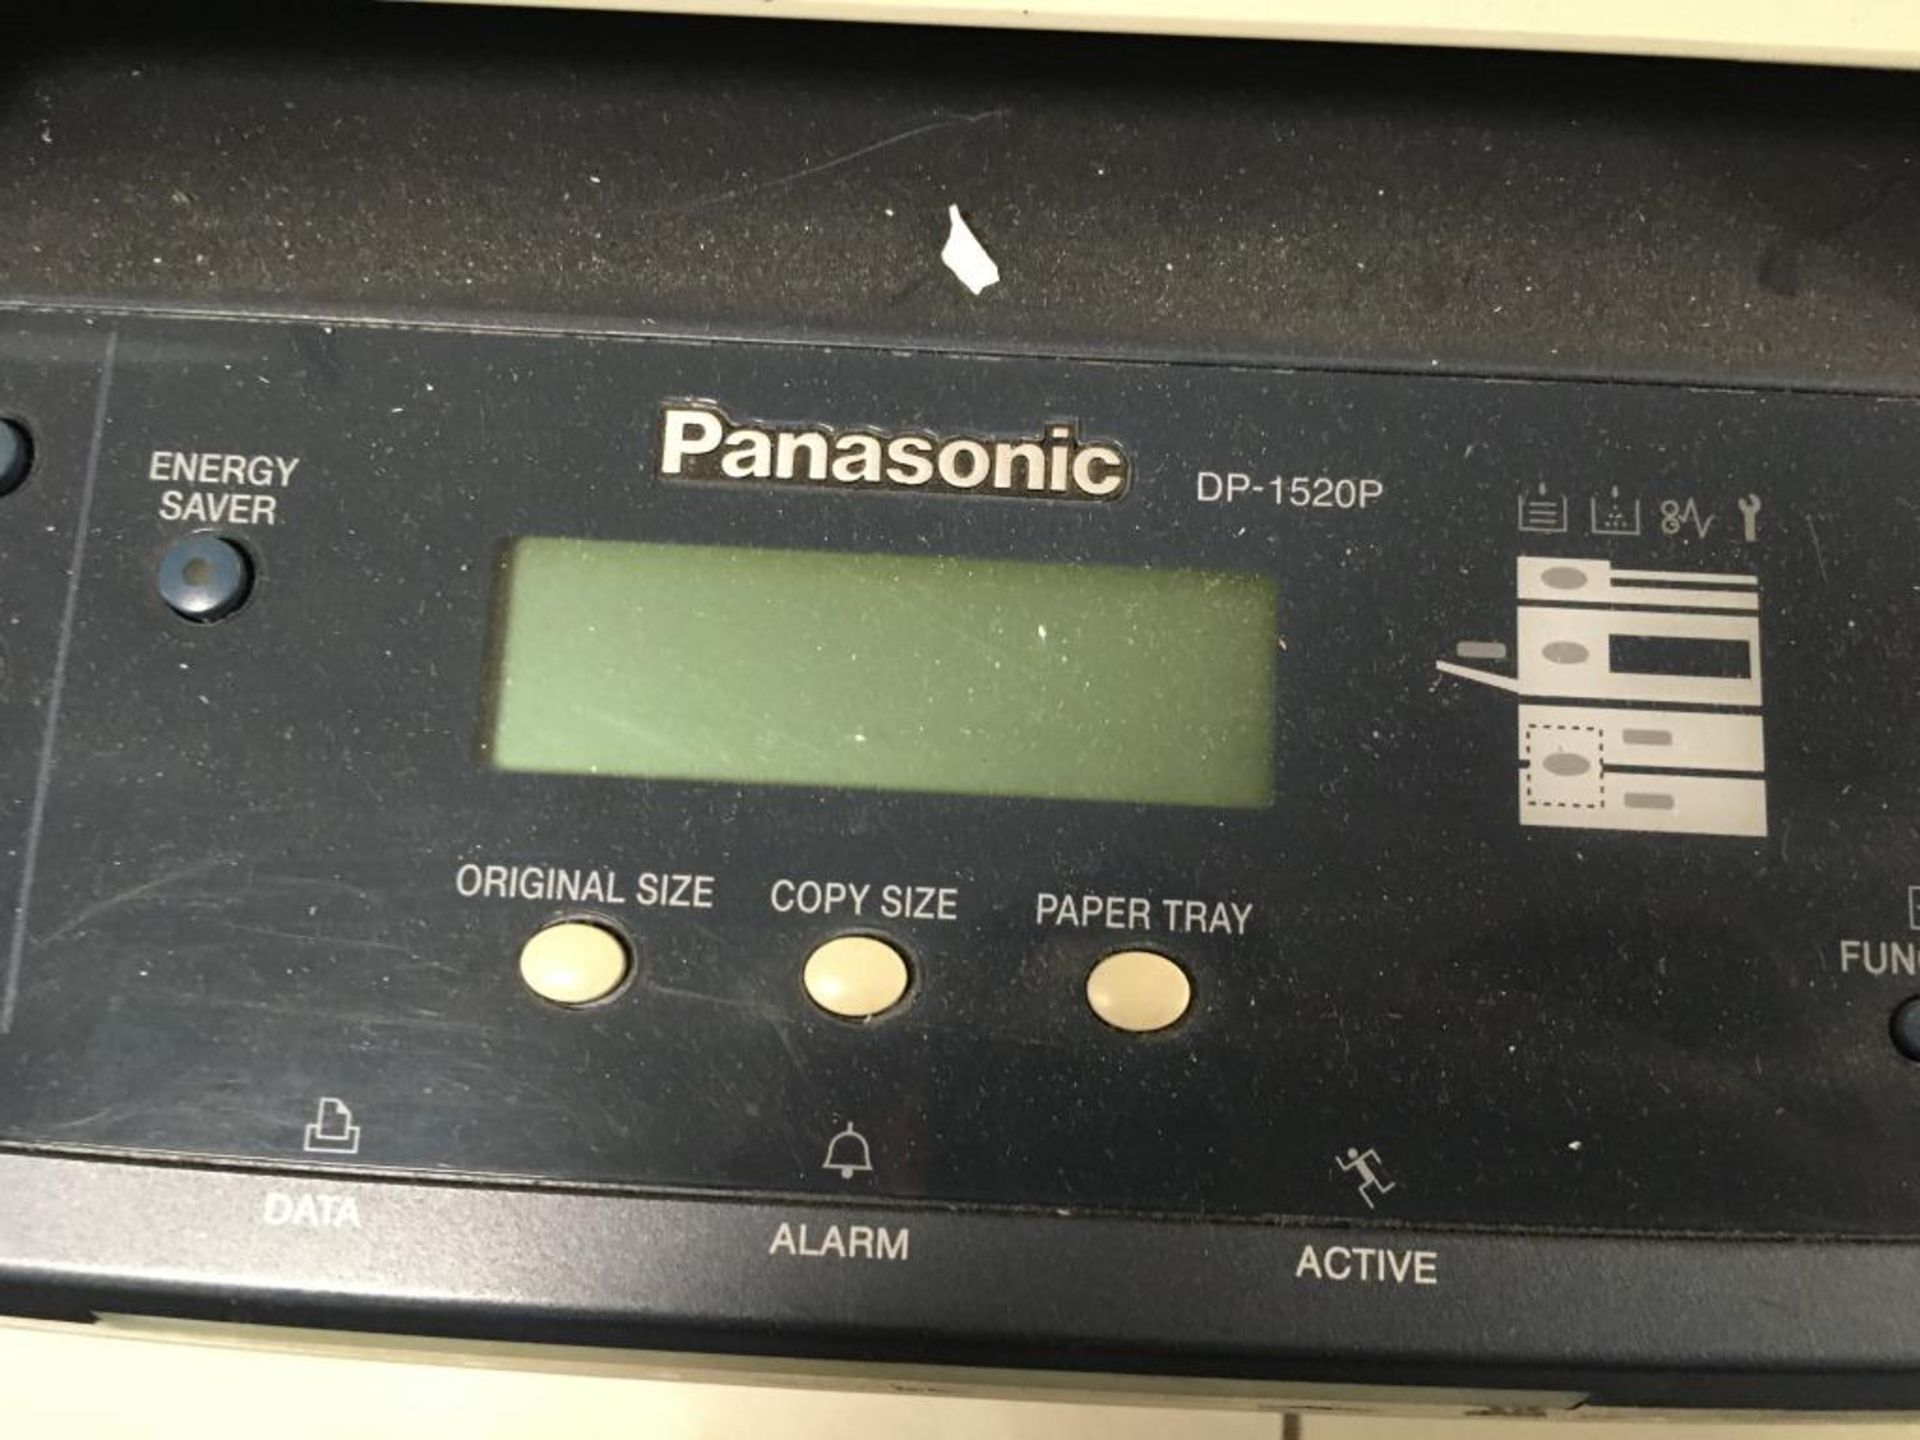 Panasonic DP-1520P photocopier - Image 2 of 3